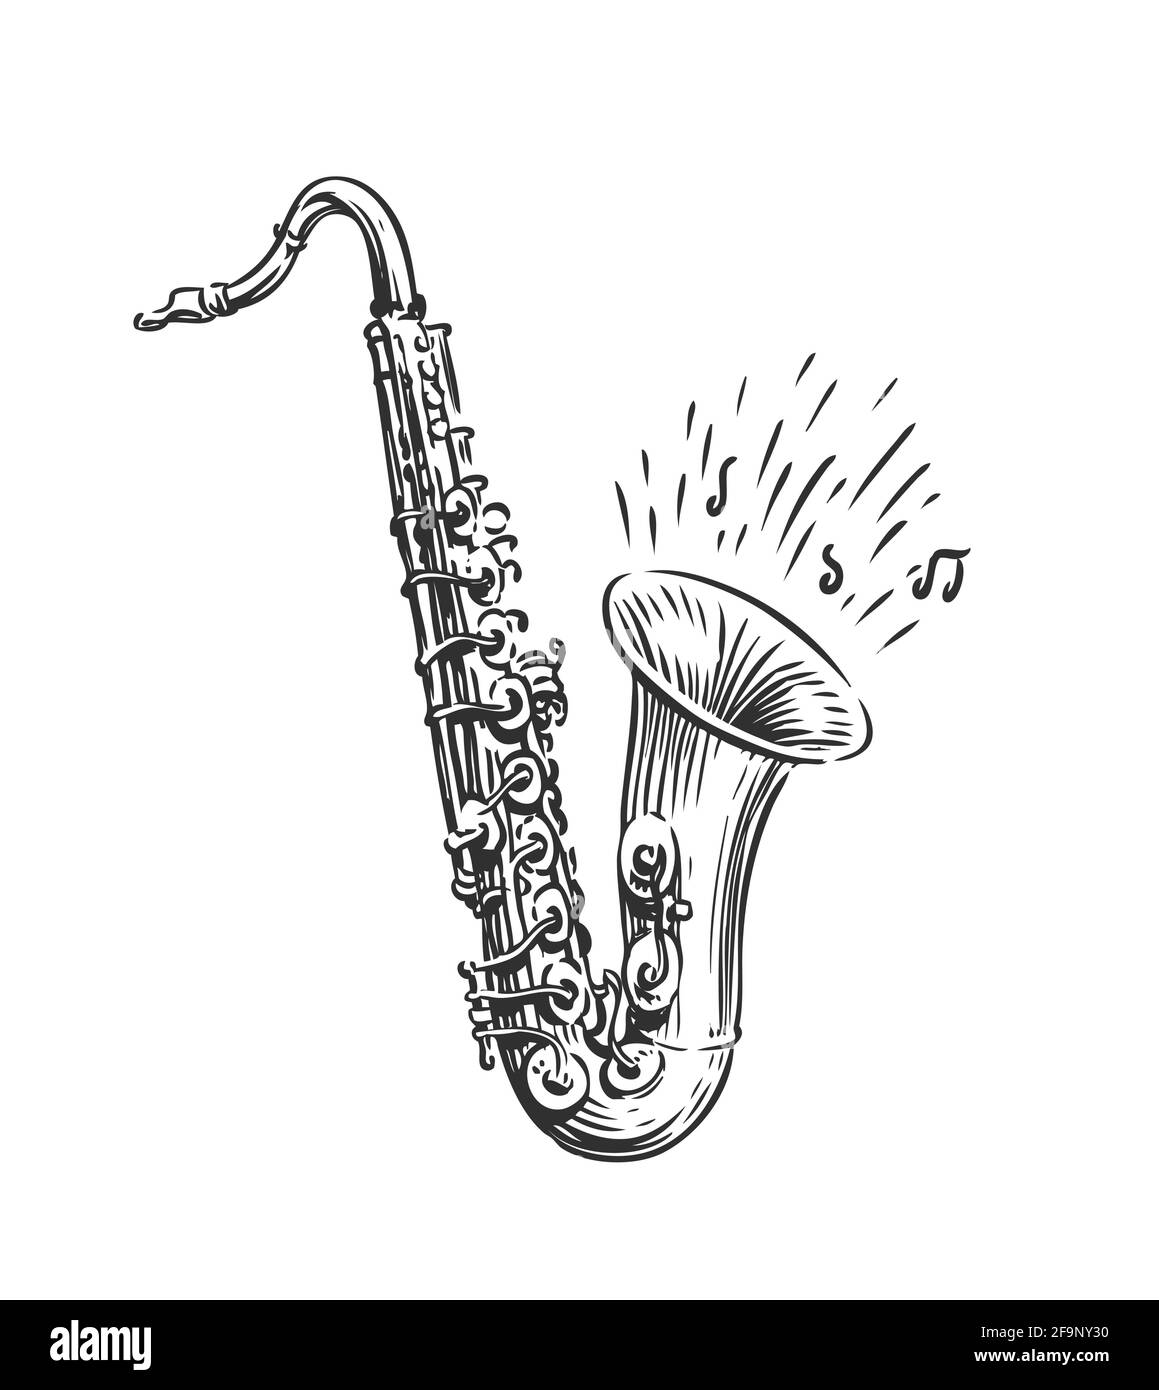 Dessin à la main de saxophone à vecteur isolé art. Instrument musical pour la décoration invitation festival de jazz, boutique de musique Illustration de Vecteur